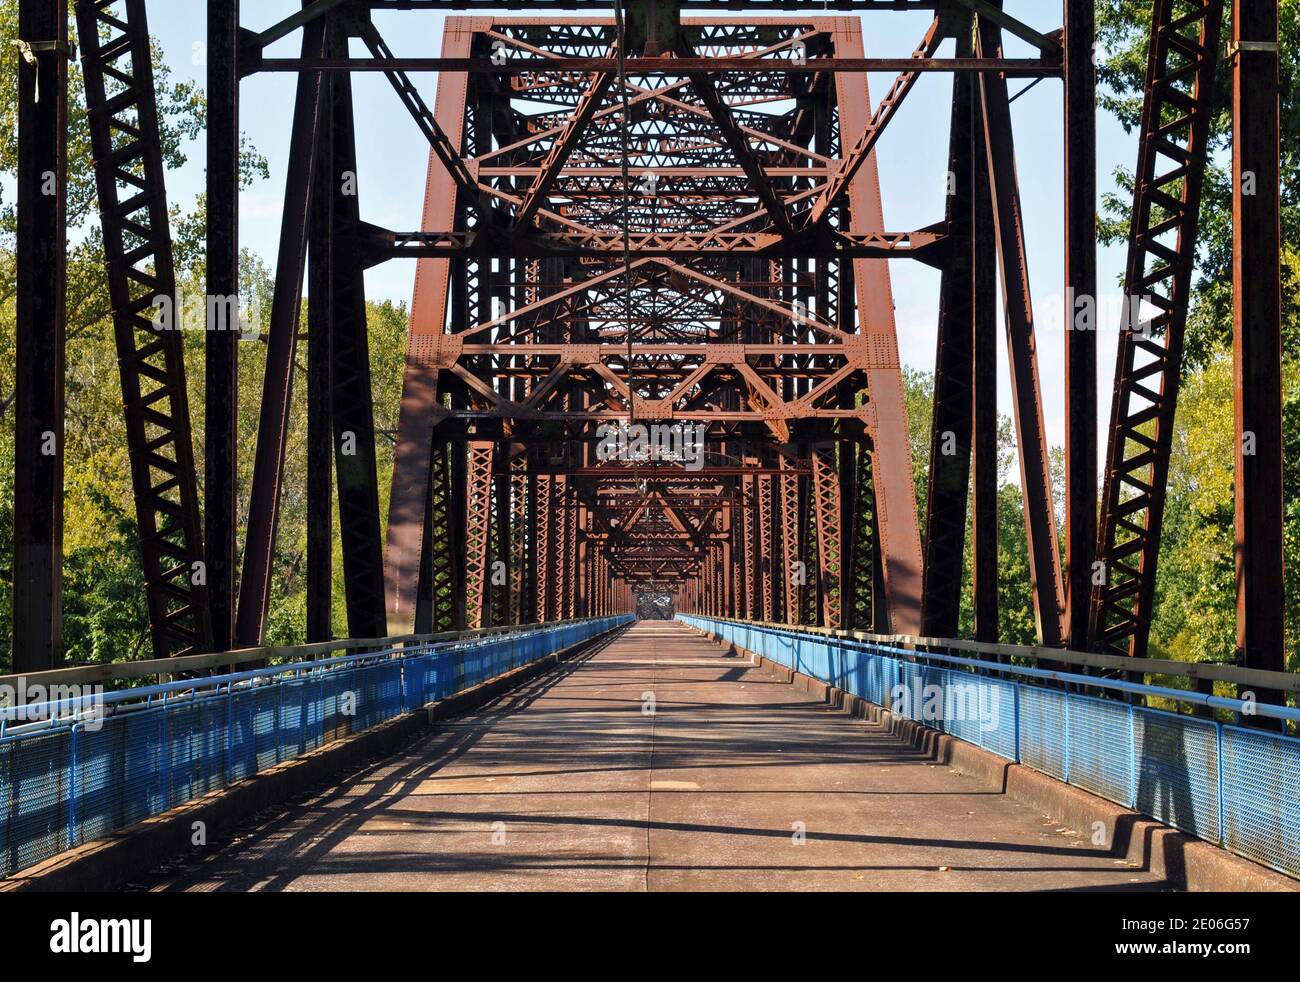 Die historische Chain of Rocks Bridge diente dazu, die Route 66 über den Mississippi River zwischen Illinois und Missouri zu transportieren. Es ist jetzt für Fußgänger zugänglich. Stockfoto